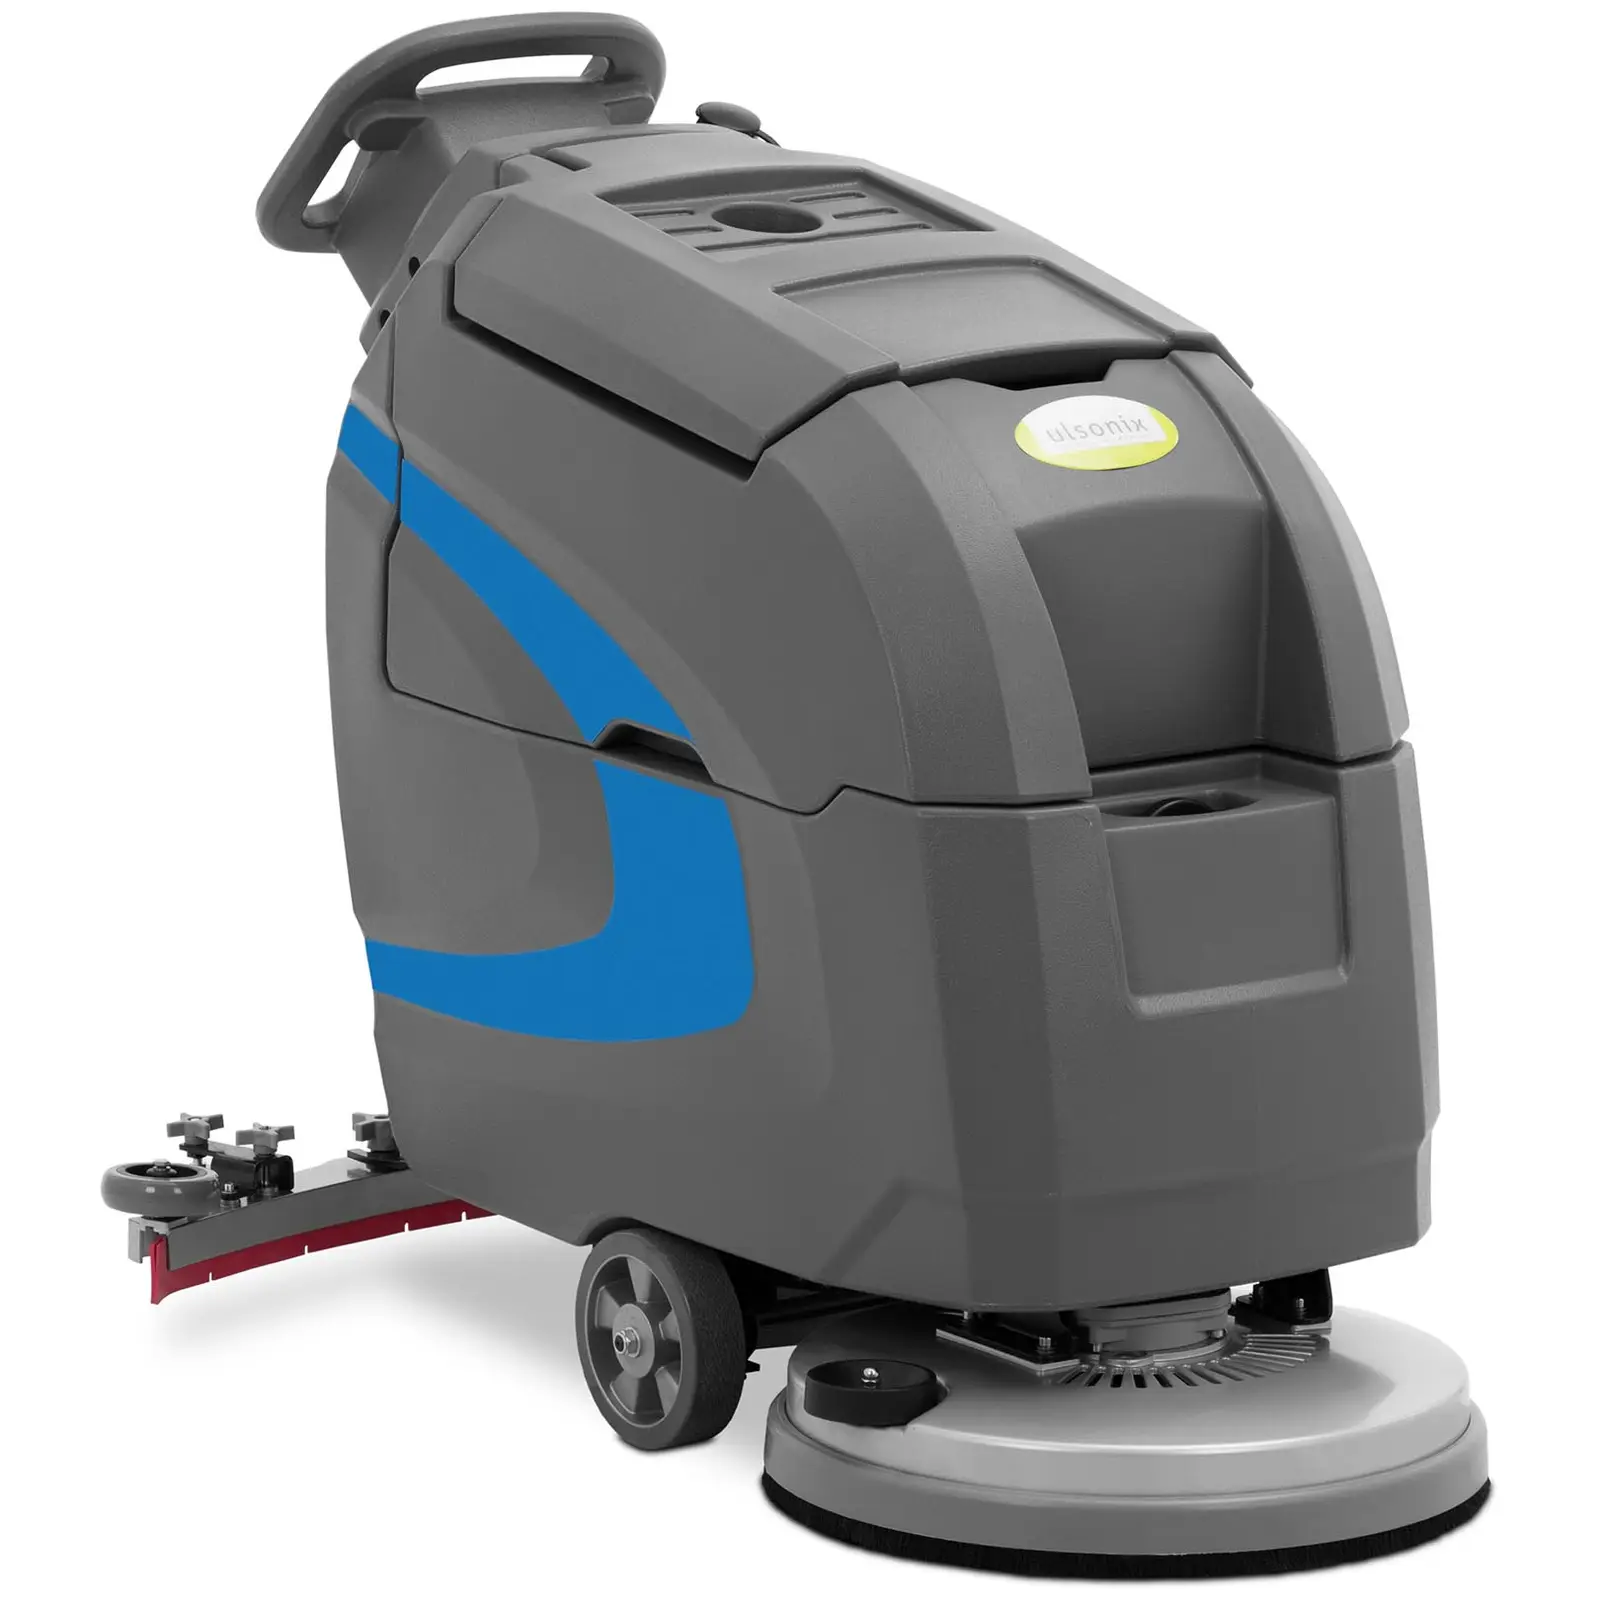 Bateriový podlahový mycí stroj - pracovní šířka 85 cm - 2 000 m²/h